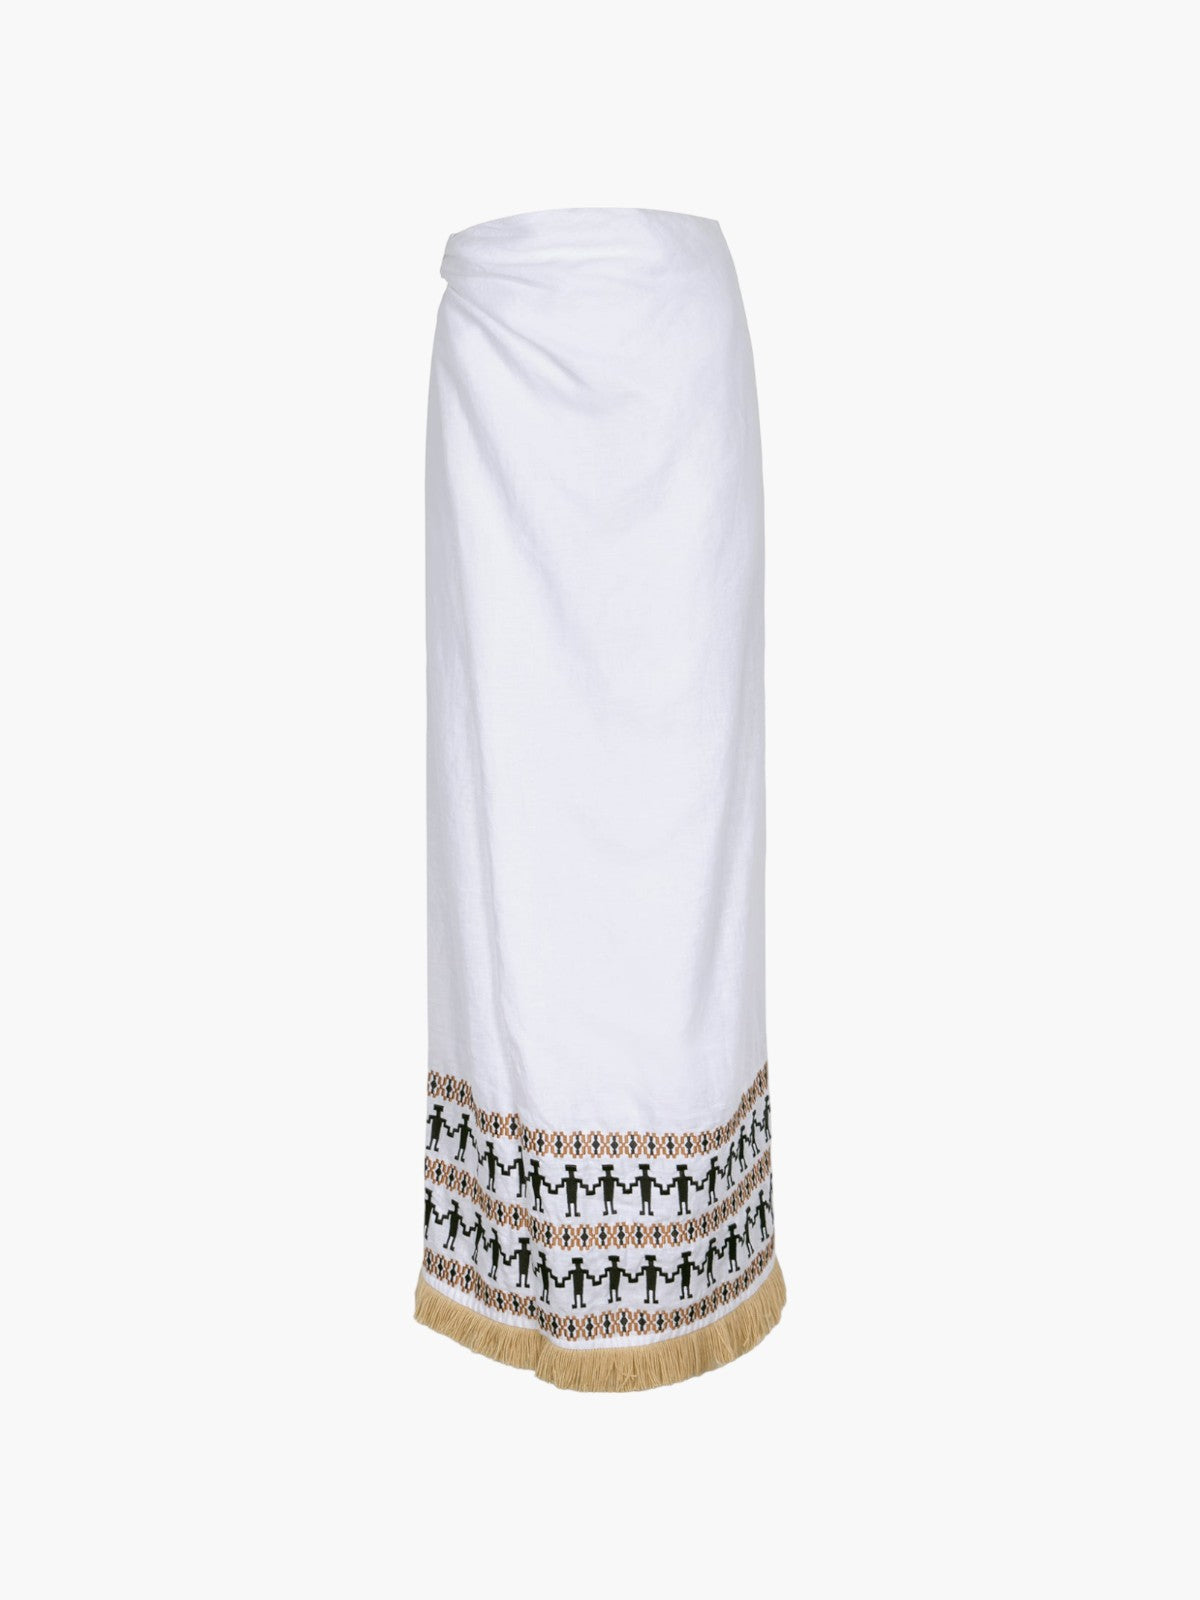 Guainia Linen Midi Skirt | White Embroidered Guainia Linen Midi Skirt | White Embroidered